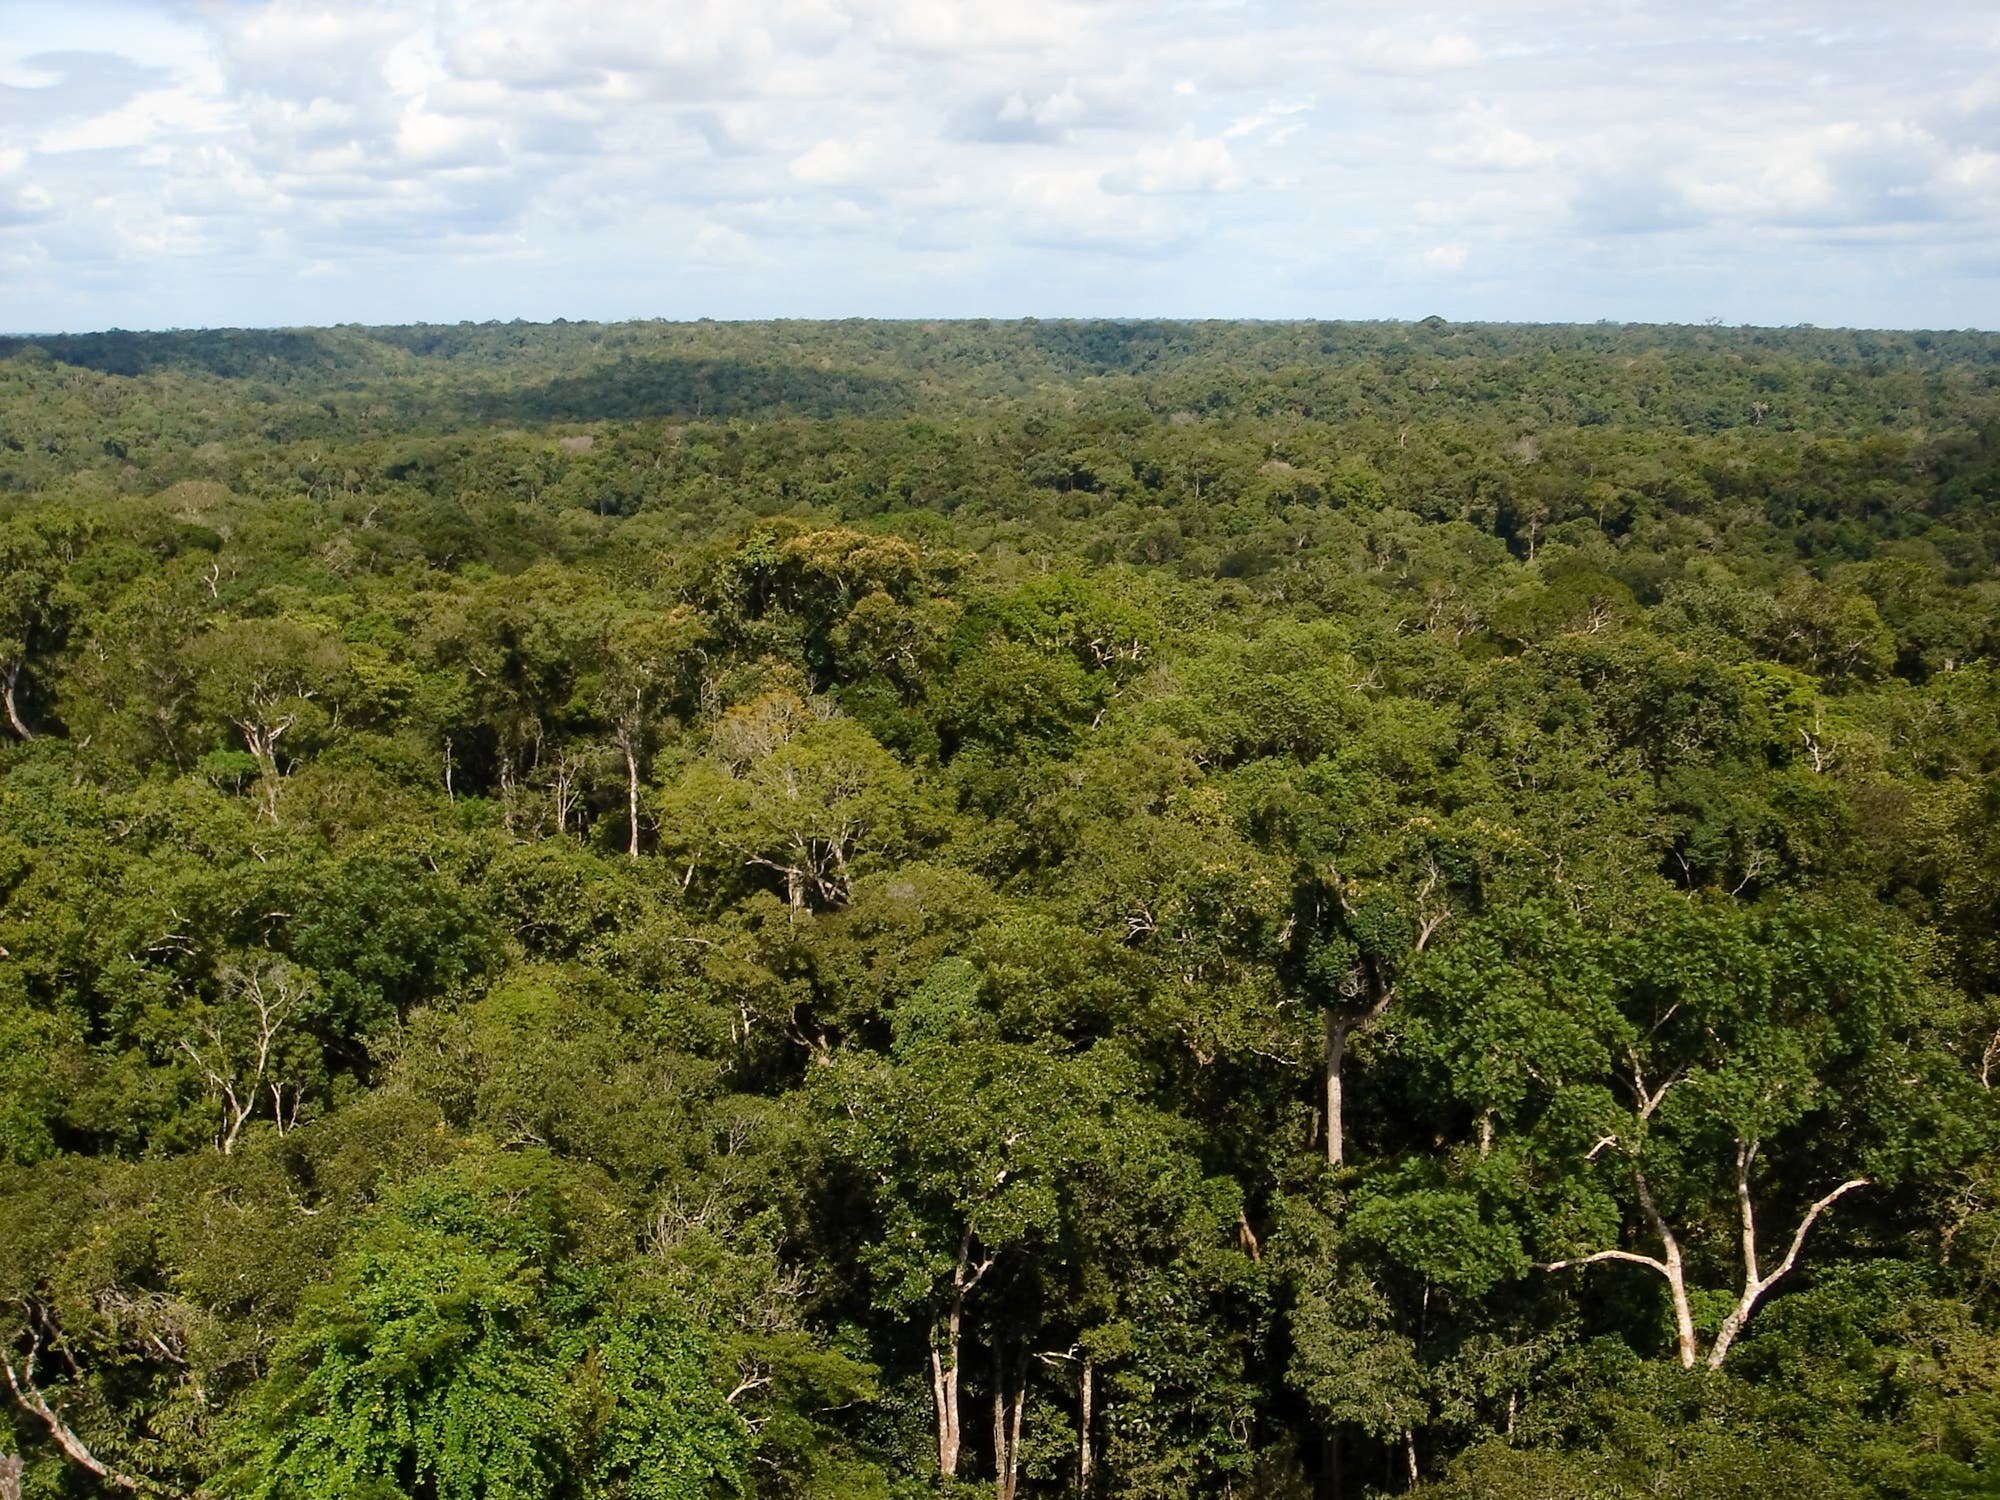 Amazonasregenwald